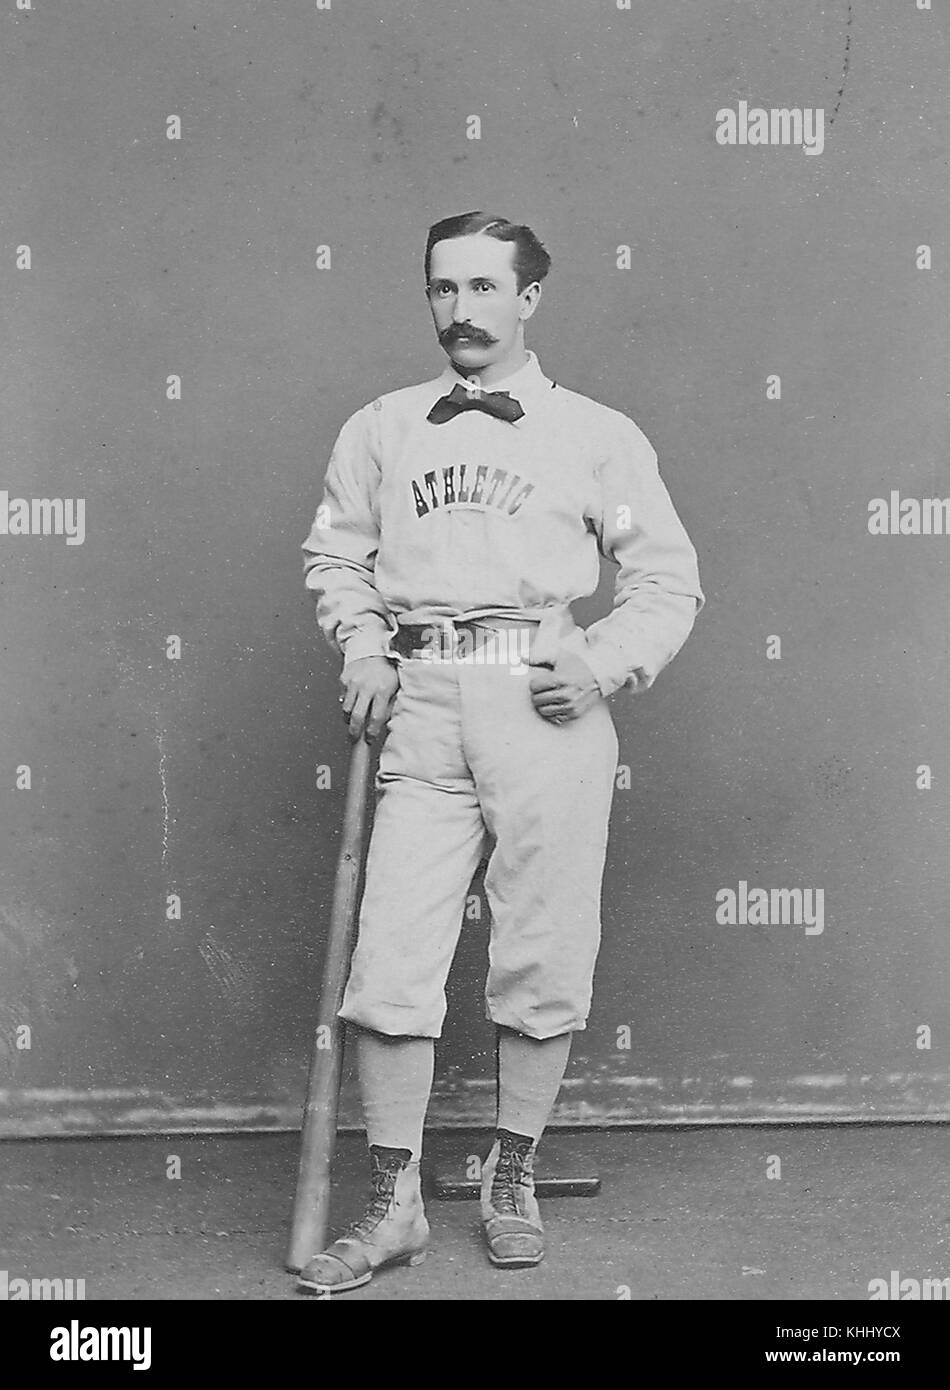 Ein fotografisches Portrait von Wes fisler tragen ein Philadelphia athletics Uniform, er ist lässig lehnte sich auf eine Fledermaus vor einer Basis, die er als erste Basisspieler und zweiten Basisspieler während seiner Jahreszeit 10 professionelle Karriere gespielt, er ist mit dem Schlagen der erste Lauf in der Major League Baseball Geschichte, 1874 gutgeschrieben. Von der New York Public Library. Stockfoto